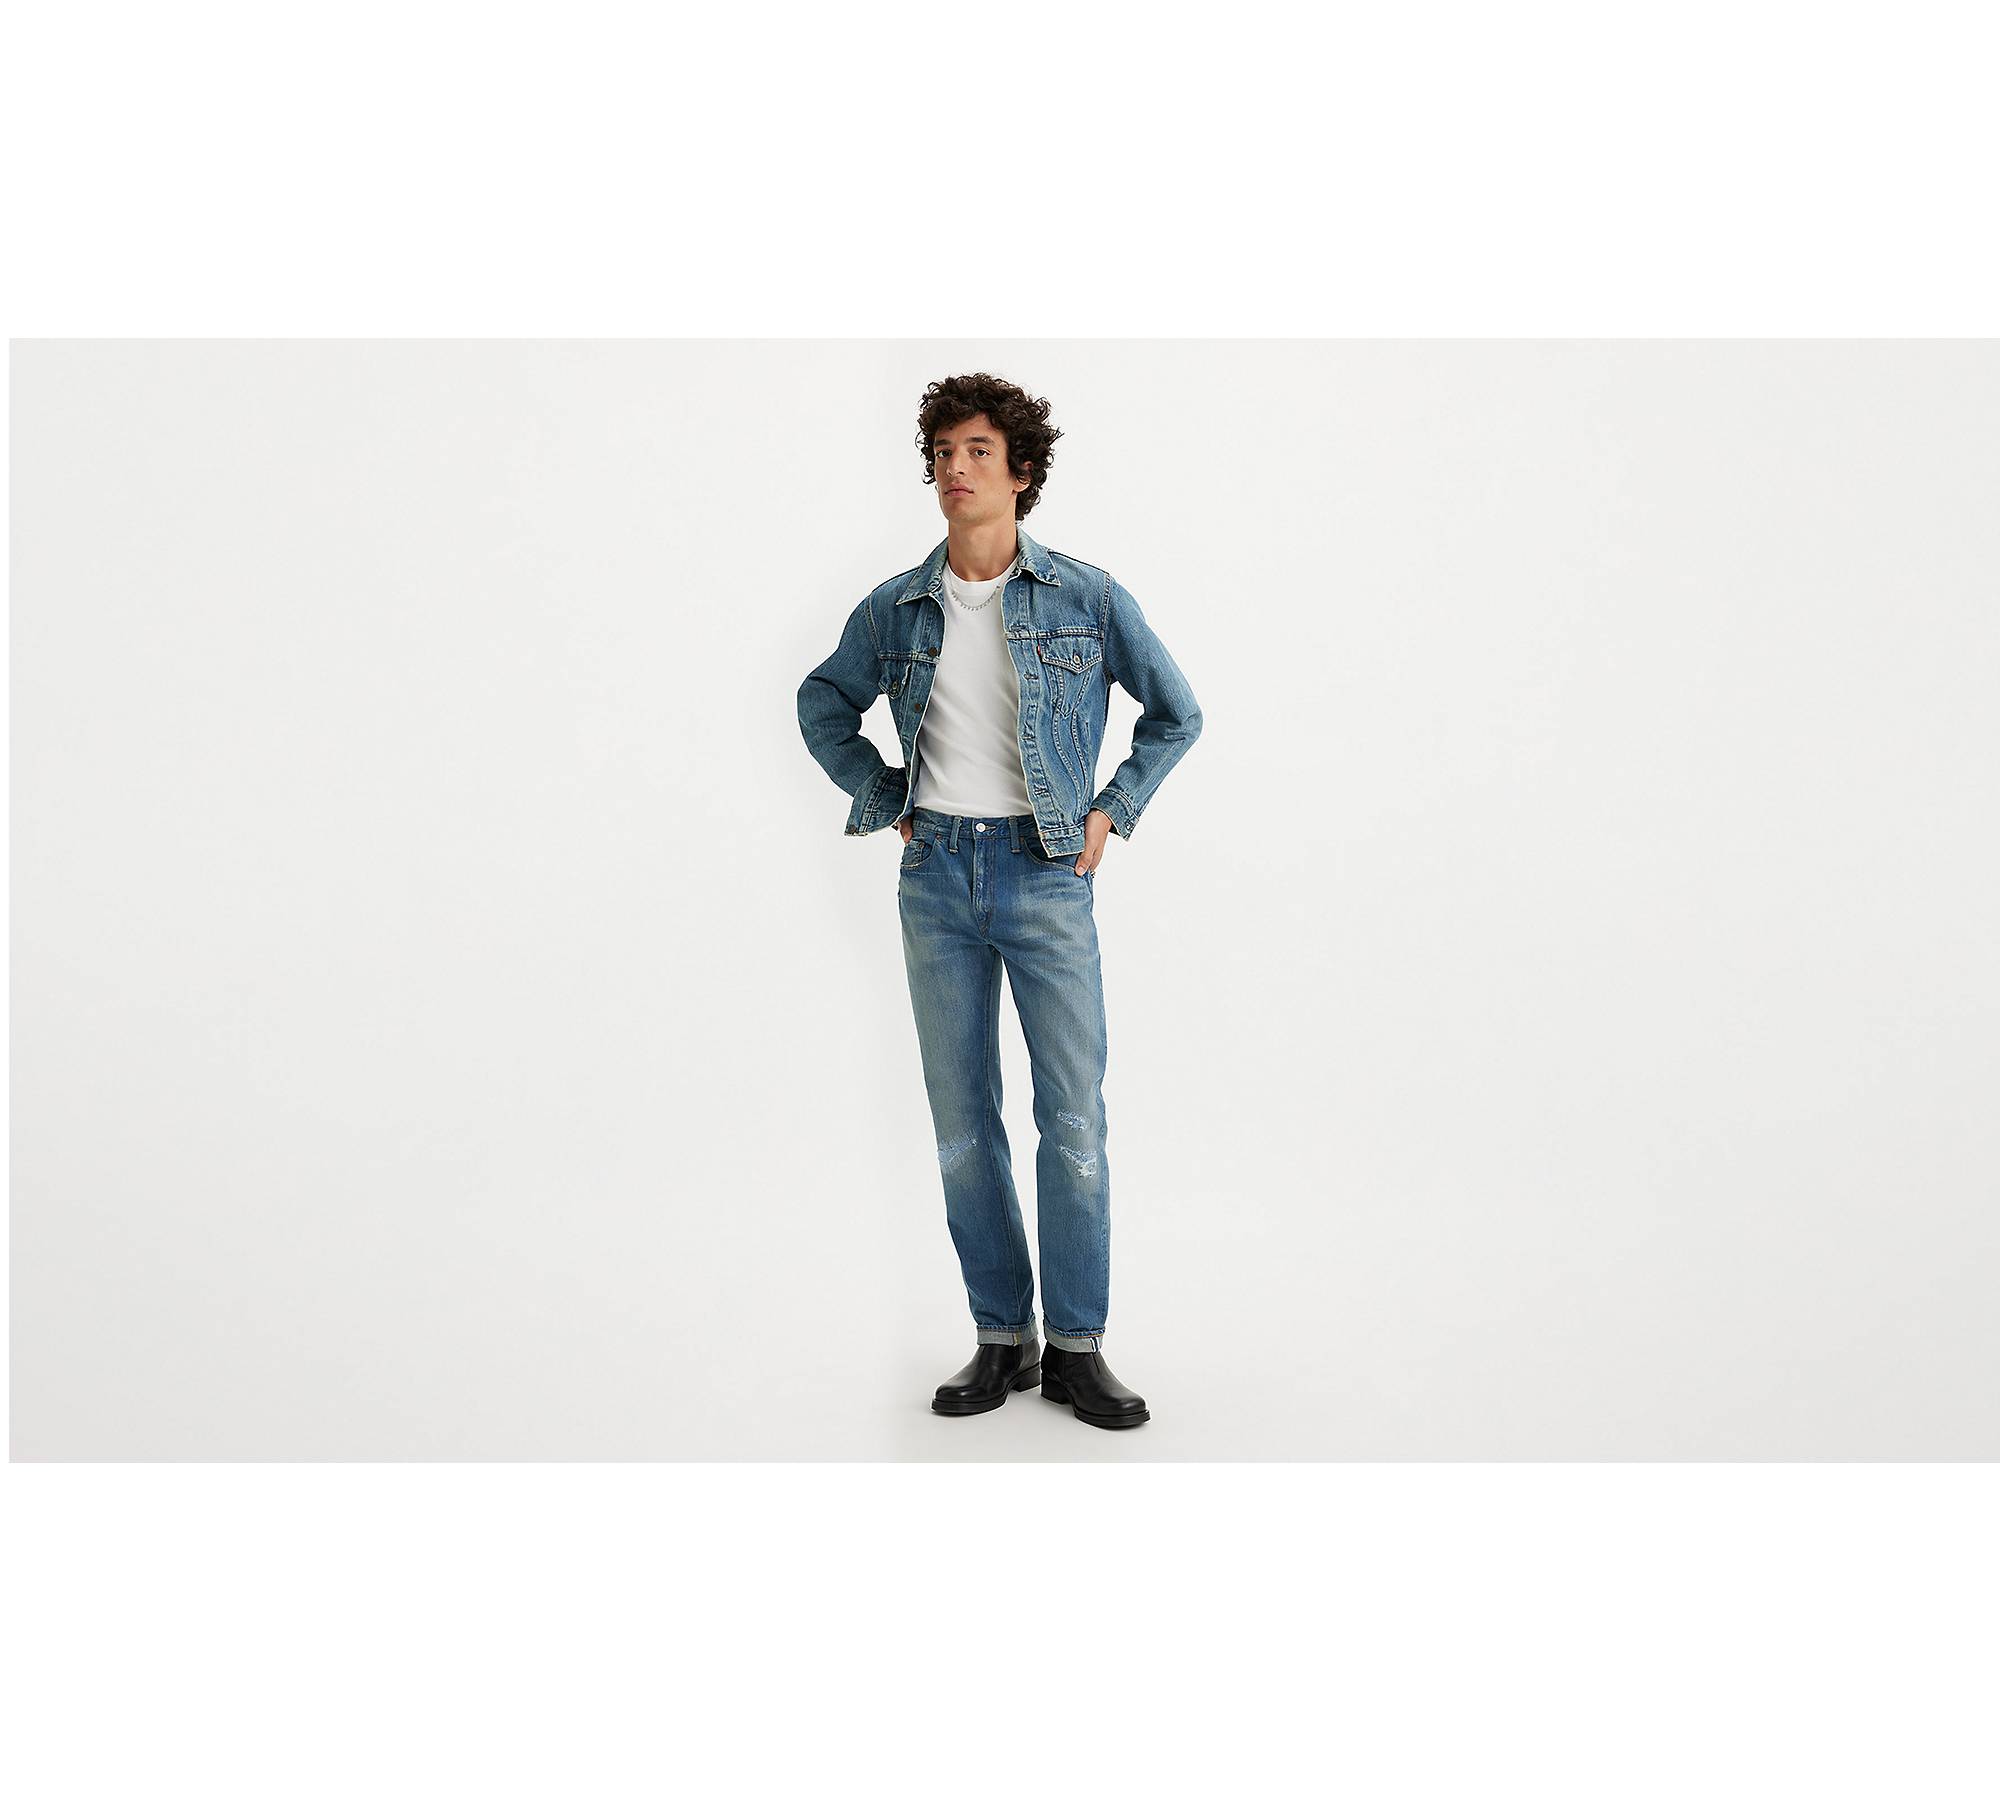 1954 501® Original Fit Selvedge Men's Jeans - Medium Wash | Levi's® US